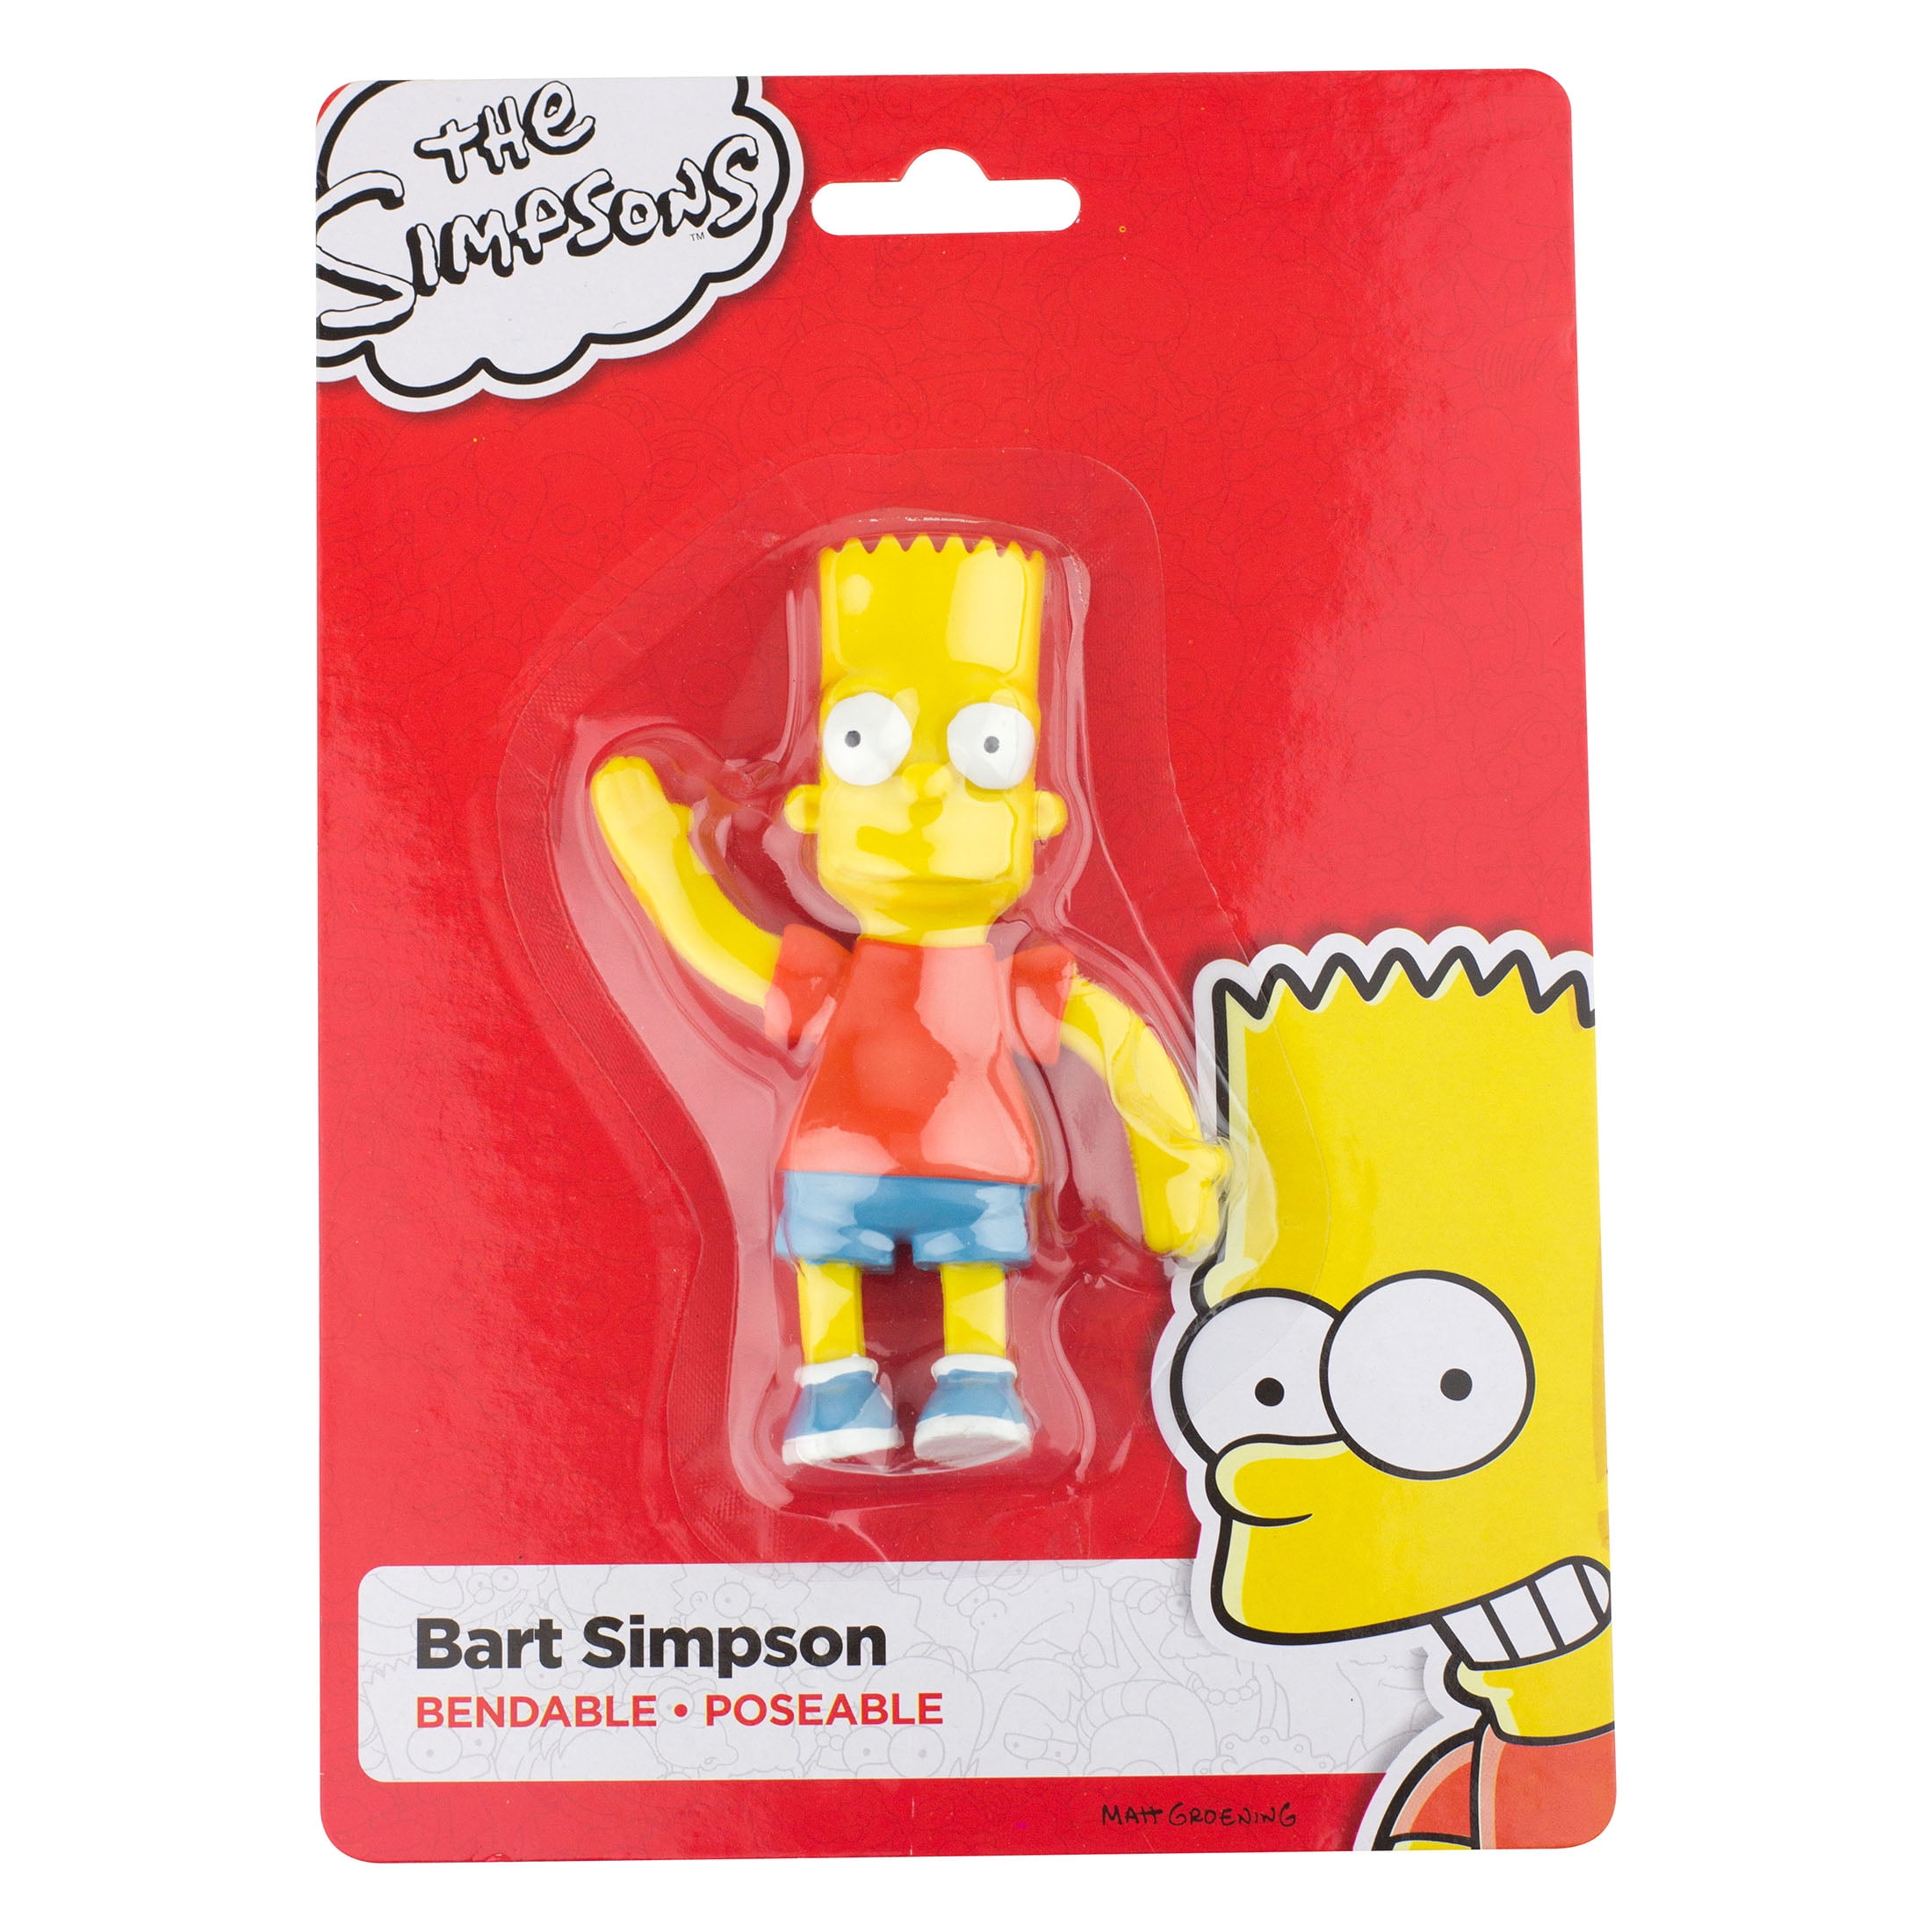 The Simpsons Bart Simpson Bendable Figure Magnet NJ Croce for sale online